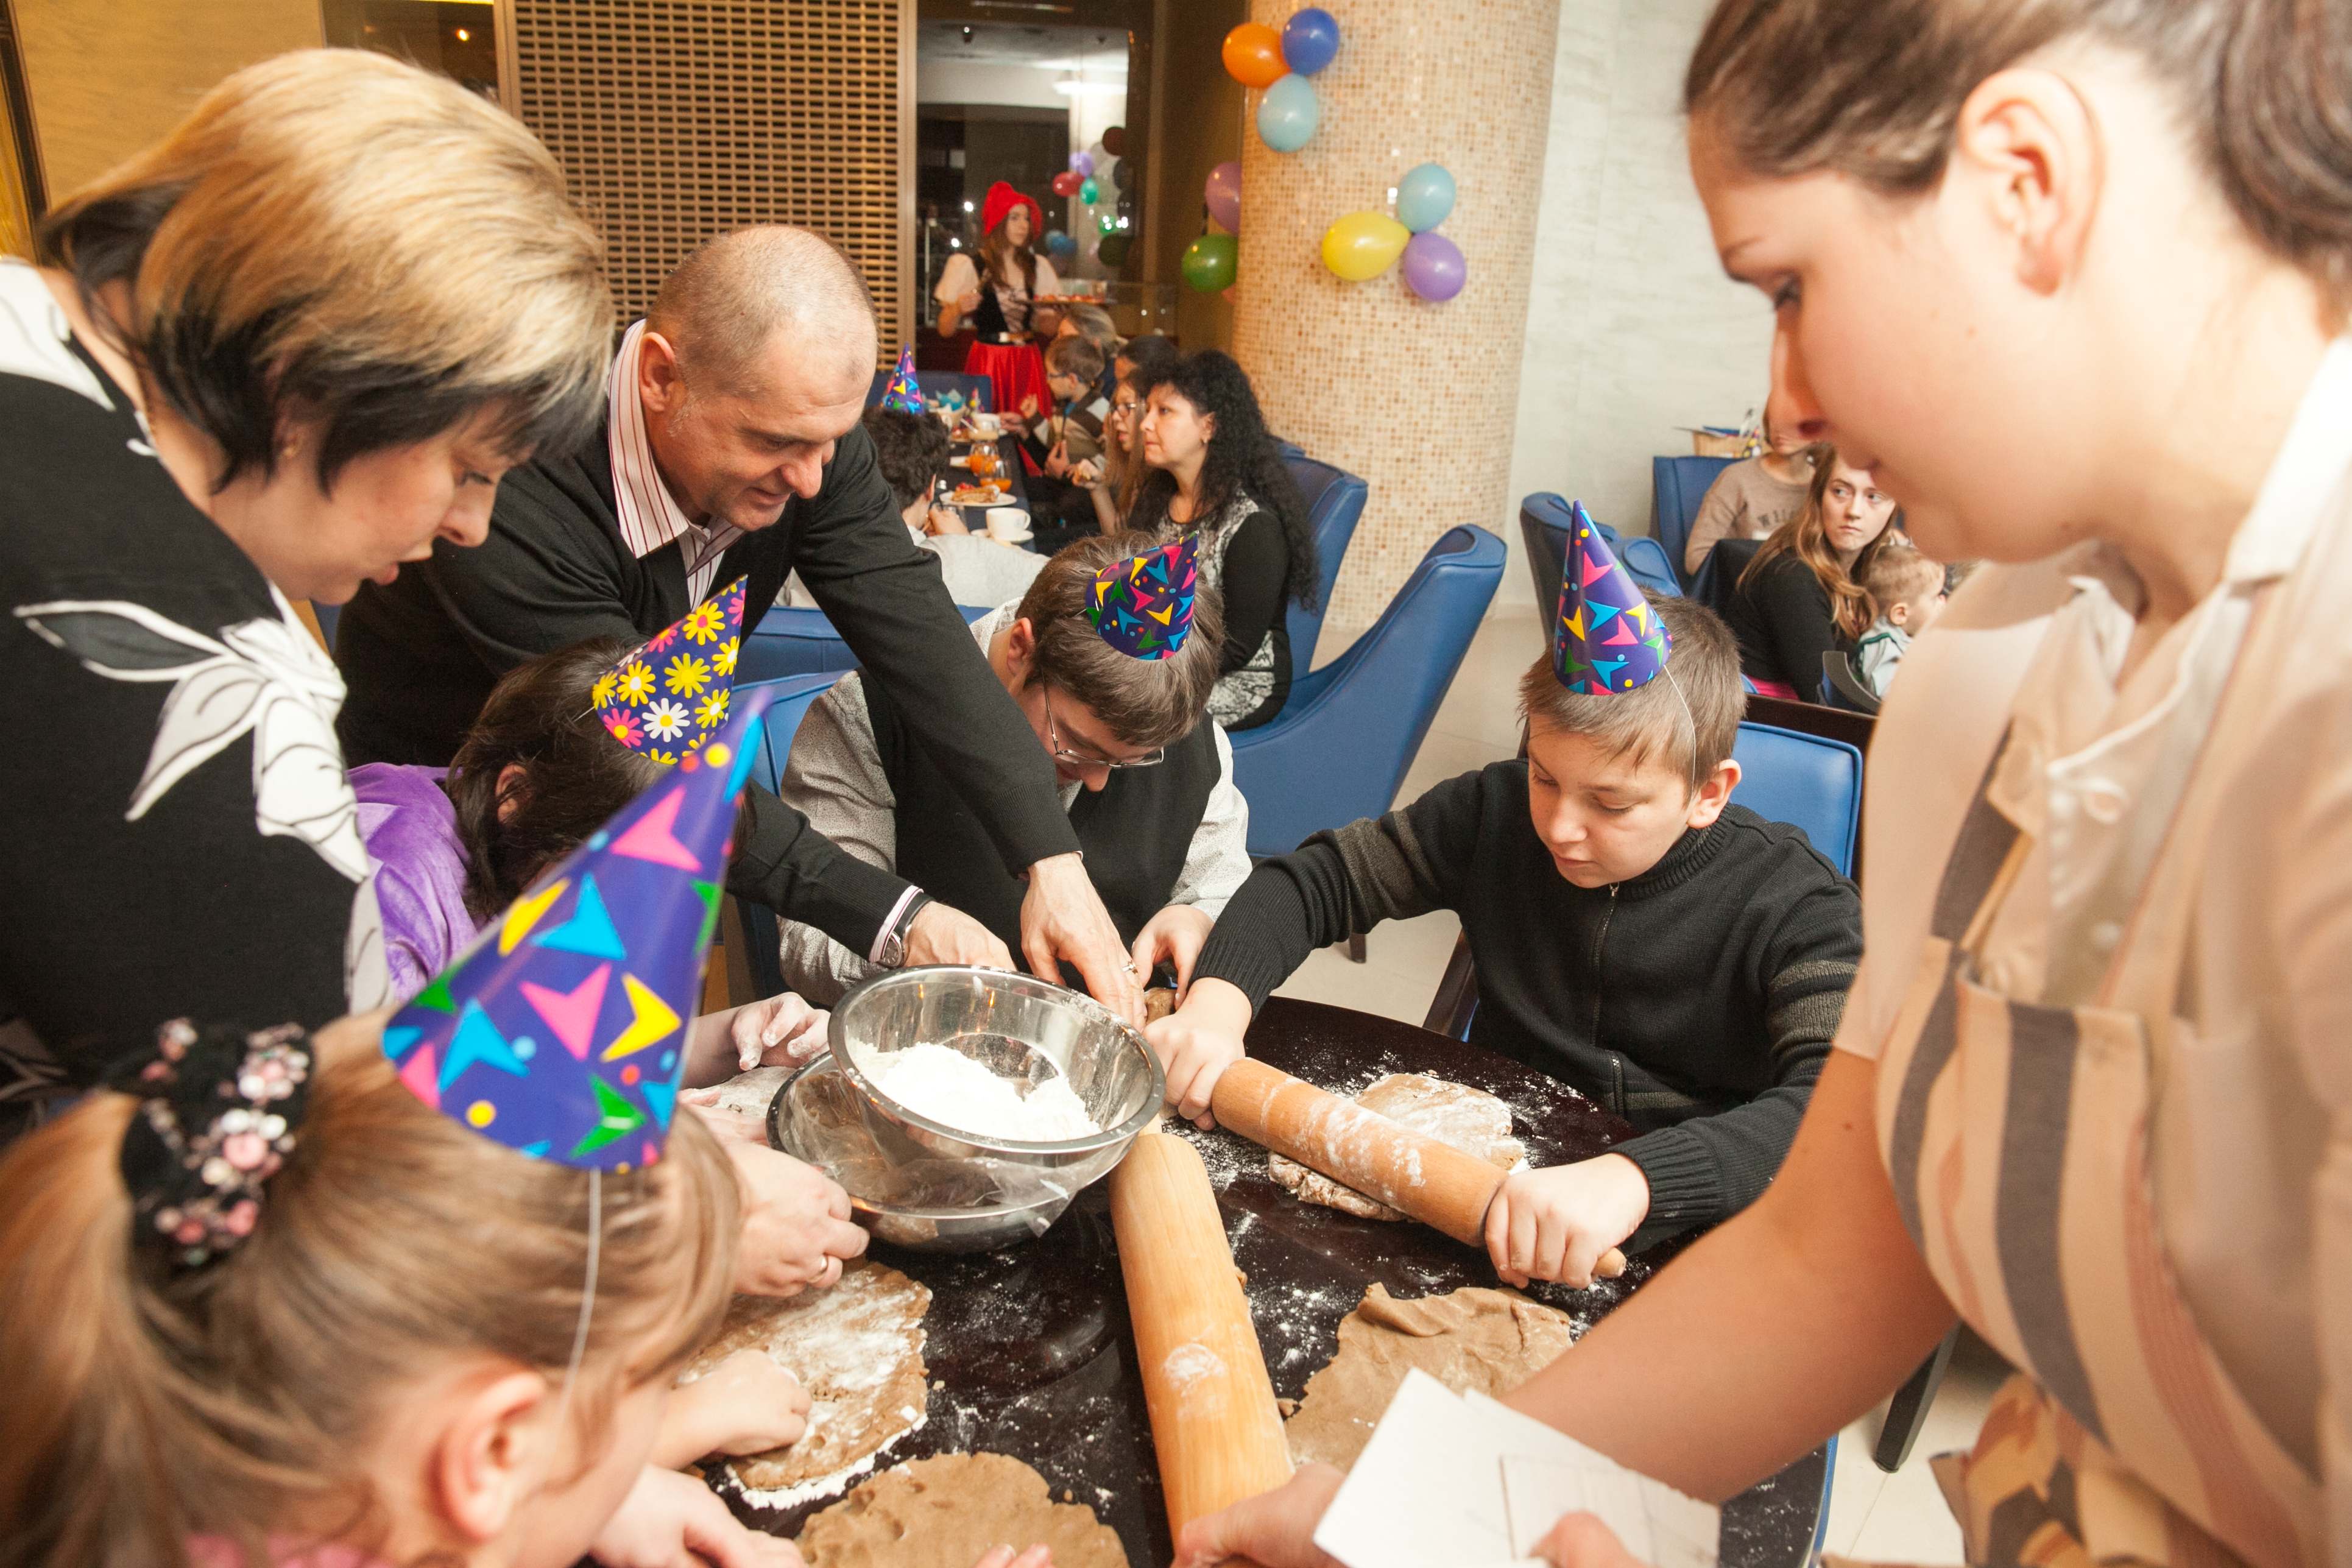 Новая калининградская пекарня La Cambus в день своего открытия 18 декабря пригласила 20 детей с ограничениями здоровья к себе на праздник